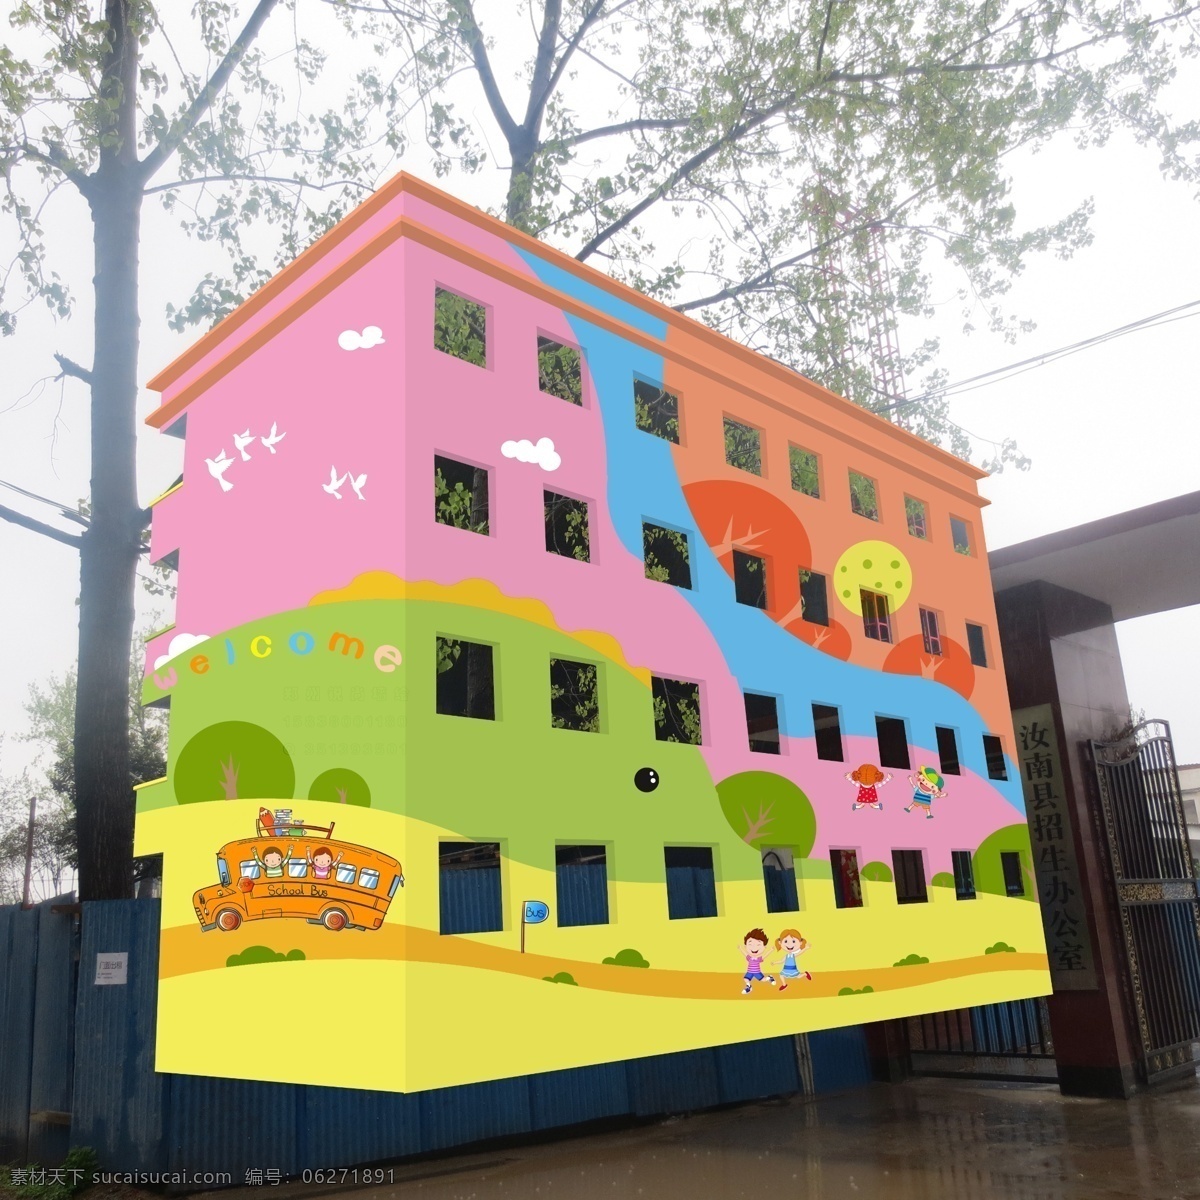 卡通图片 幼儿园墙绘 幼儿园彩绘 幼儿园外墙 幼儿园效果图 卡通素材 彩绘 手绘 锐尚墙绘 幼儿园布置图 墙 绘 分层